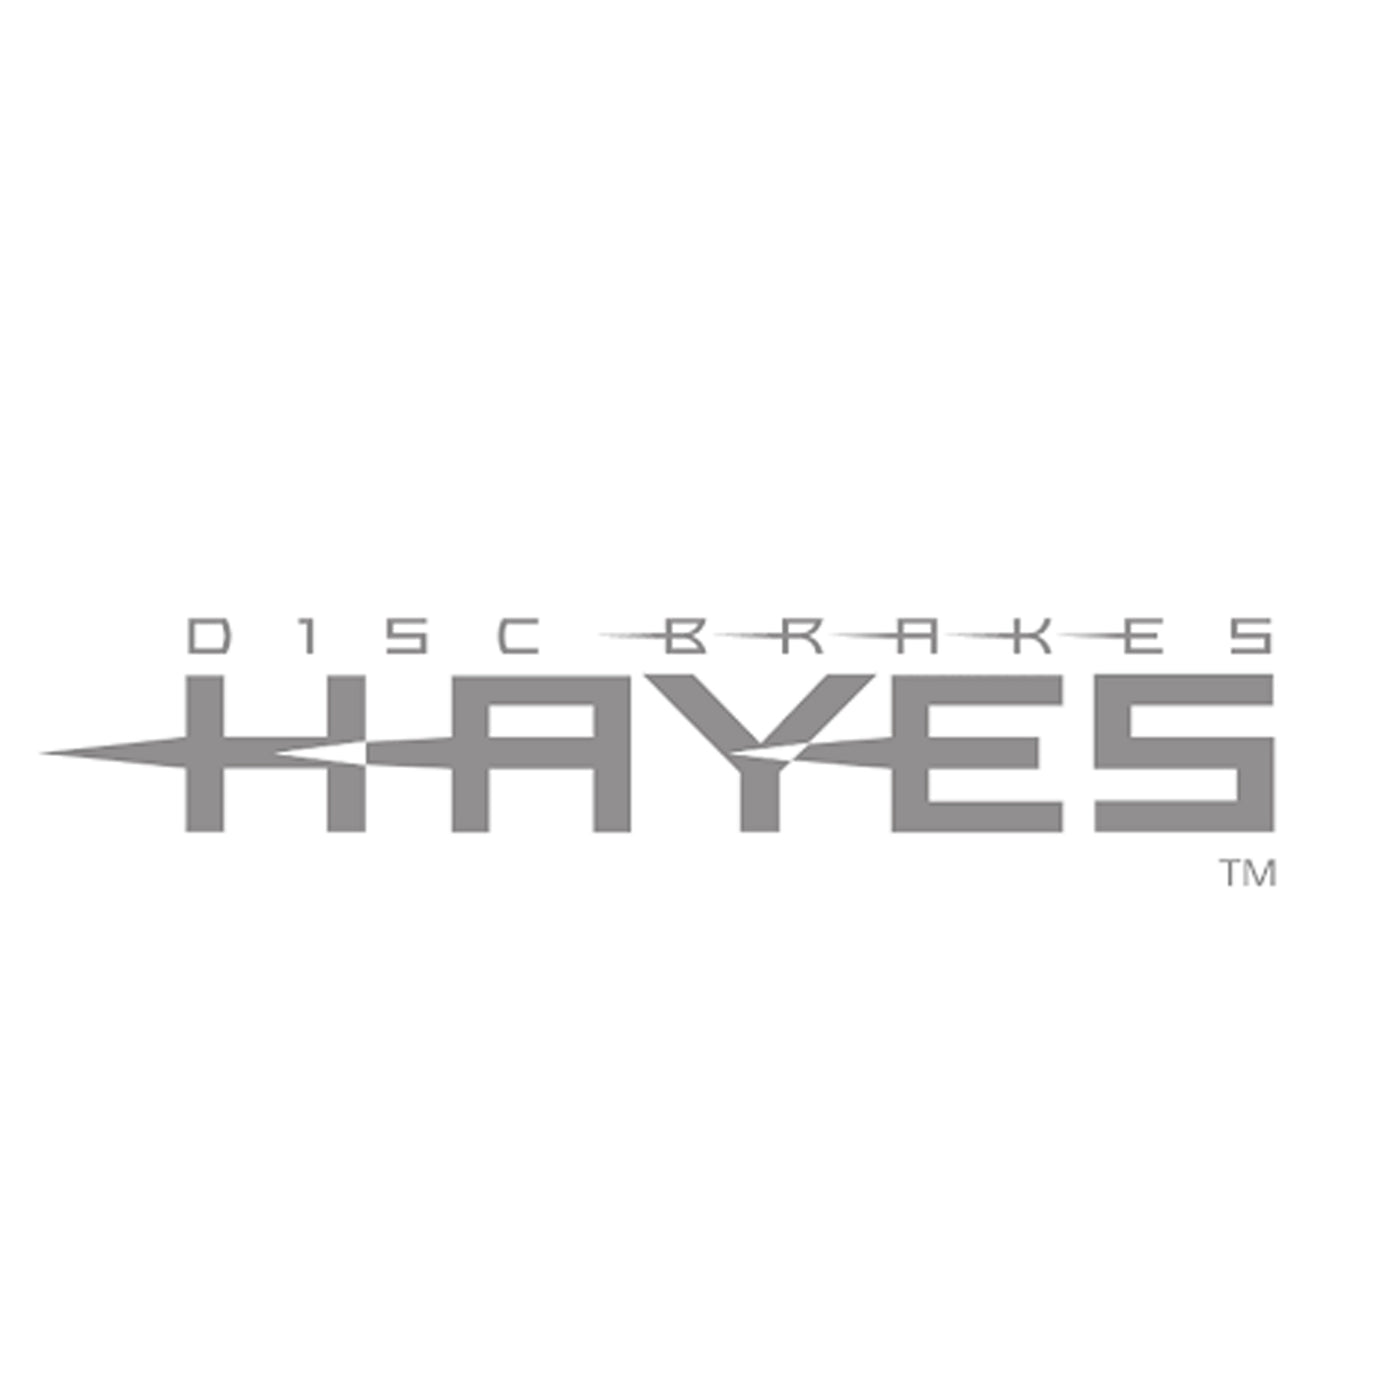 Hayes Dominion T4 brake kit